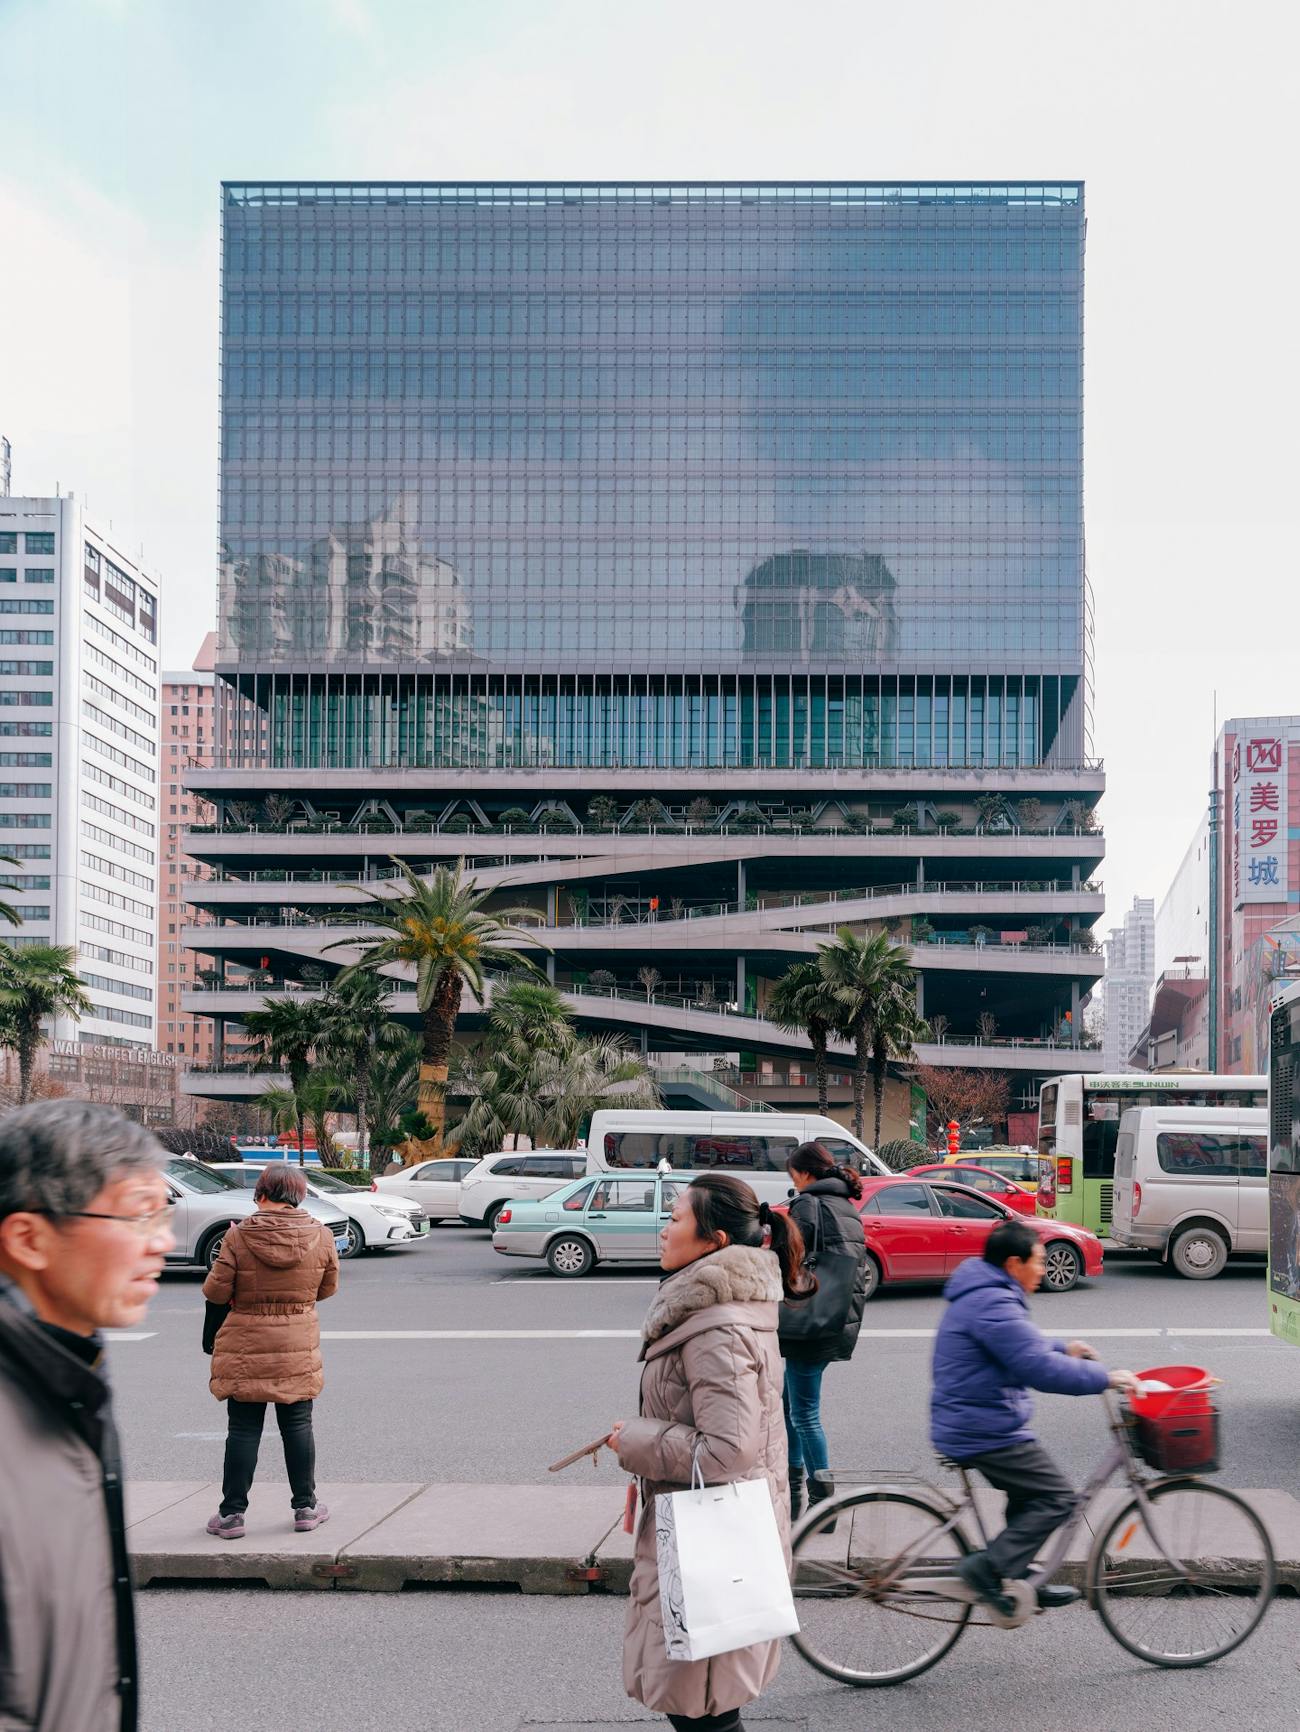 T20 Xujiahui building, China, 2019